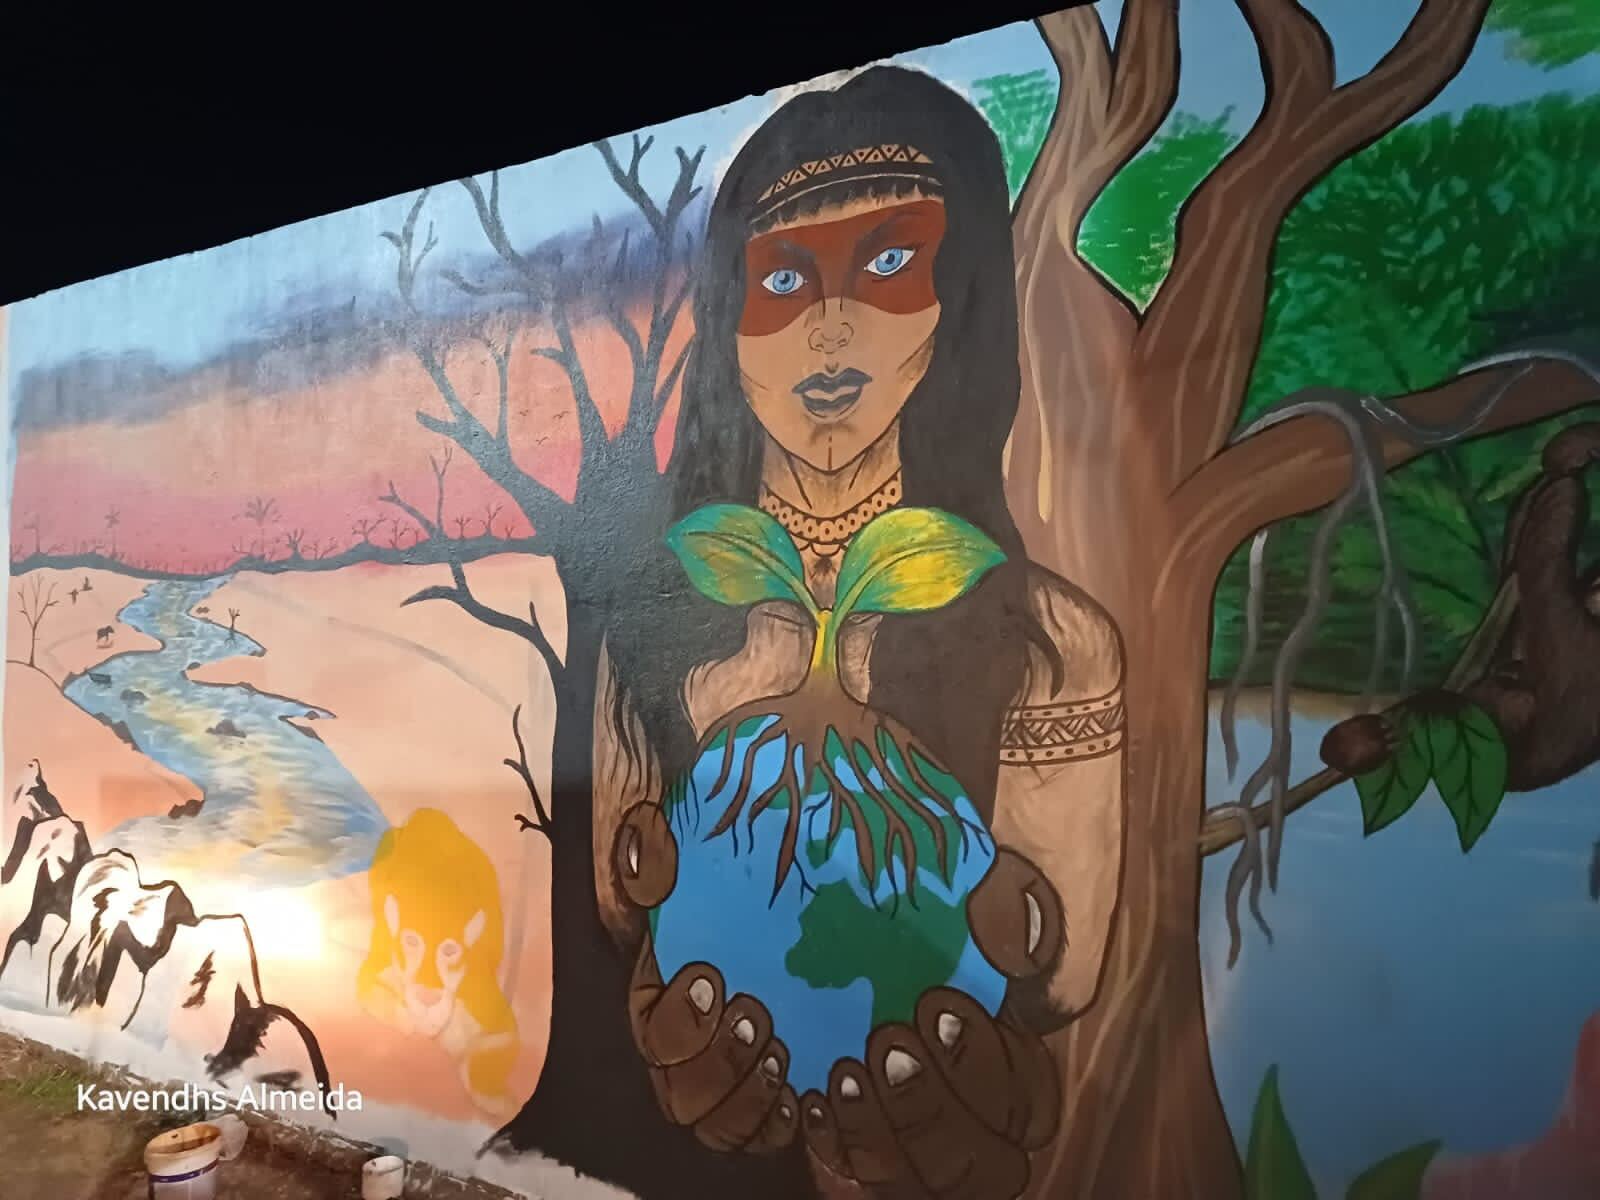 ブラジル：シルヴェス（Silves）で開催されるパワーアップアクションに向け、壁画制作や植樹を行う地域の人々。シルヴェスの人々は、アマゾン熱帯雨林のガス開発に対する抵抗運動も展開。写真提供：Kavendhs Almeida